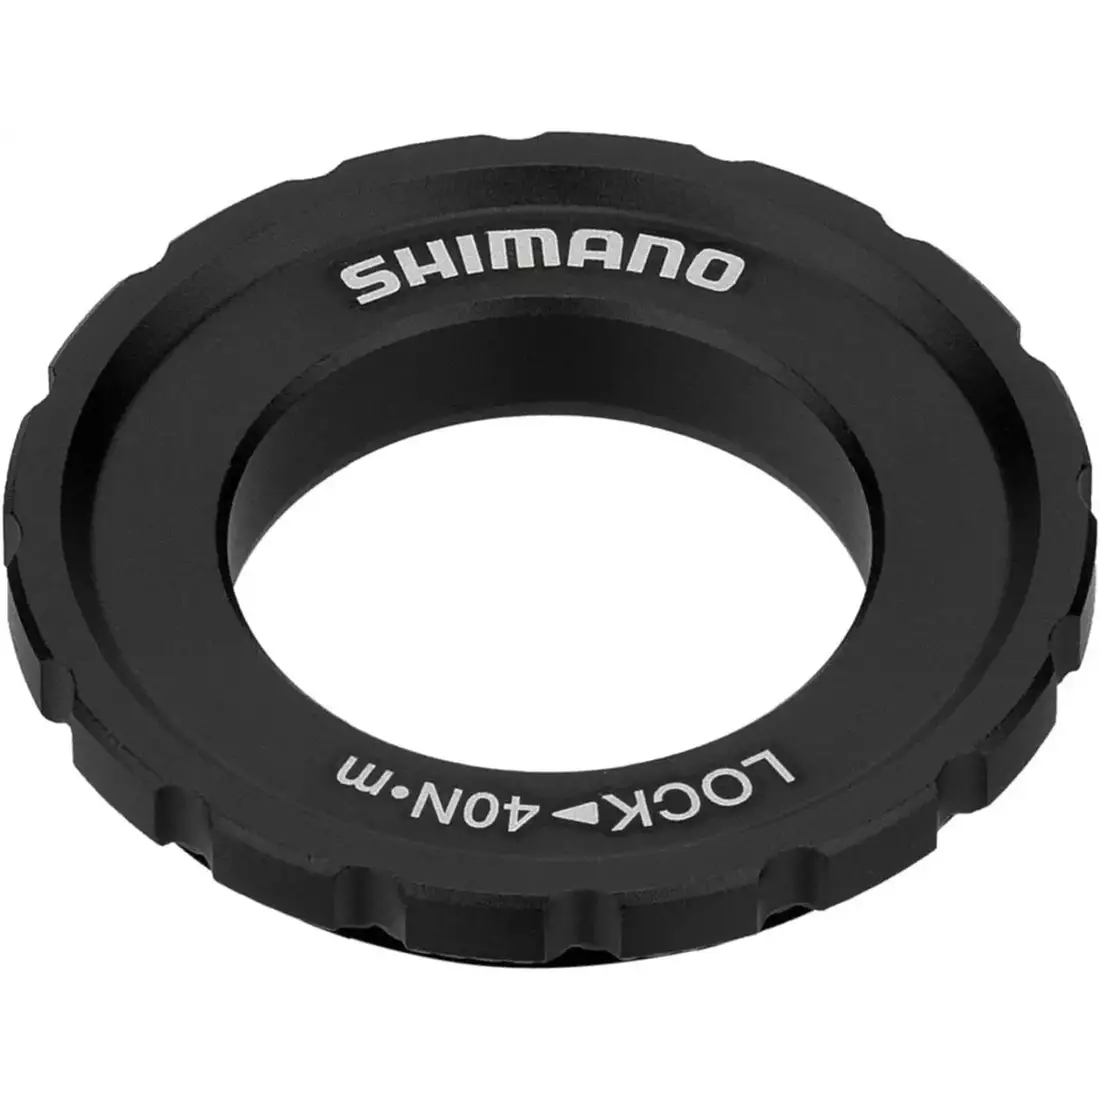 SHIMANO SM-RT64 kerékpár féktárcsa, 180mm